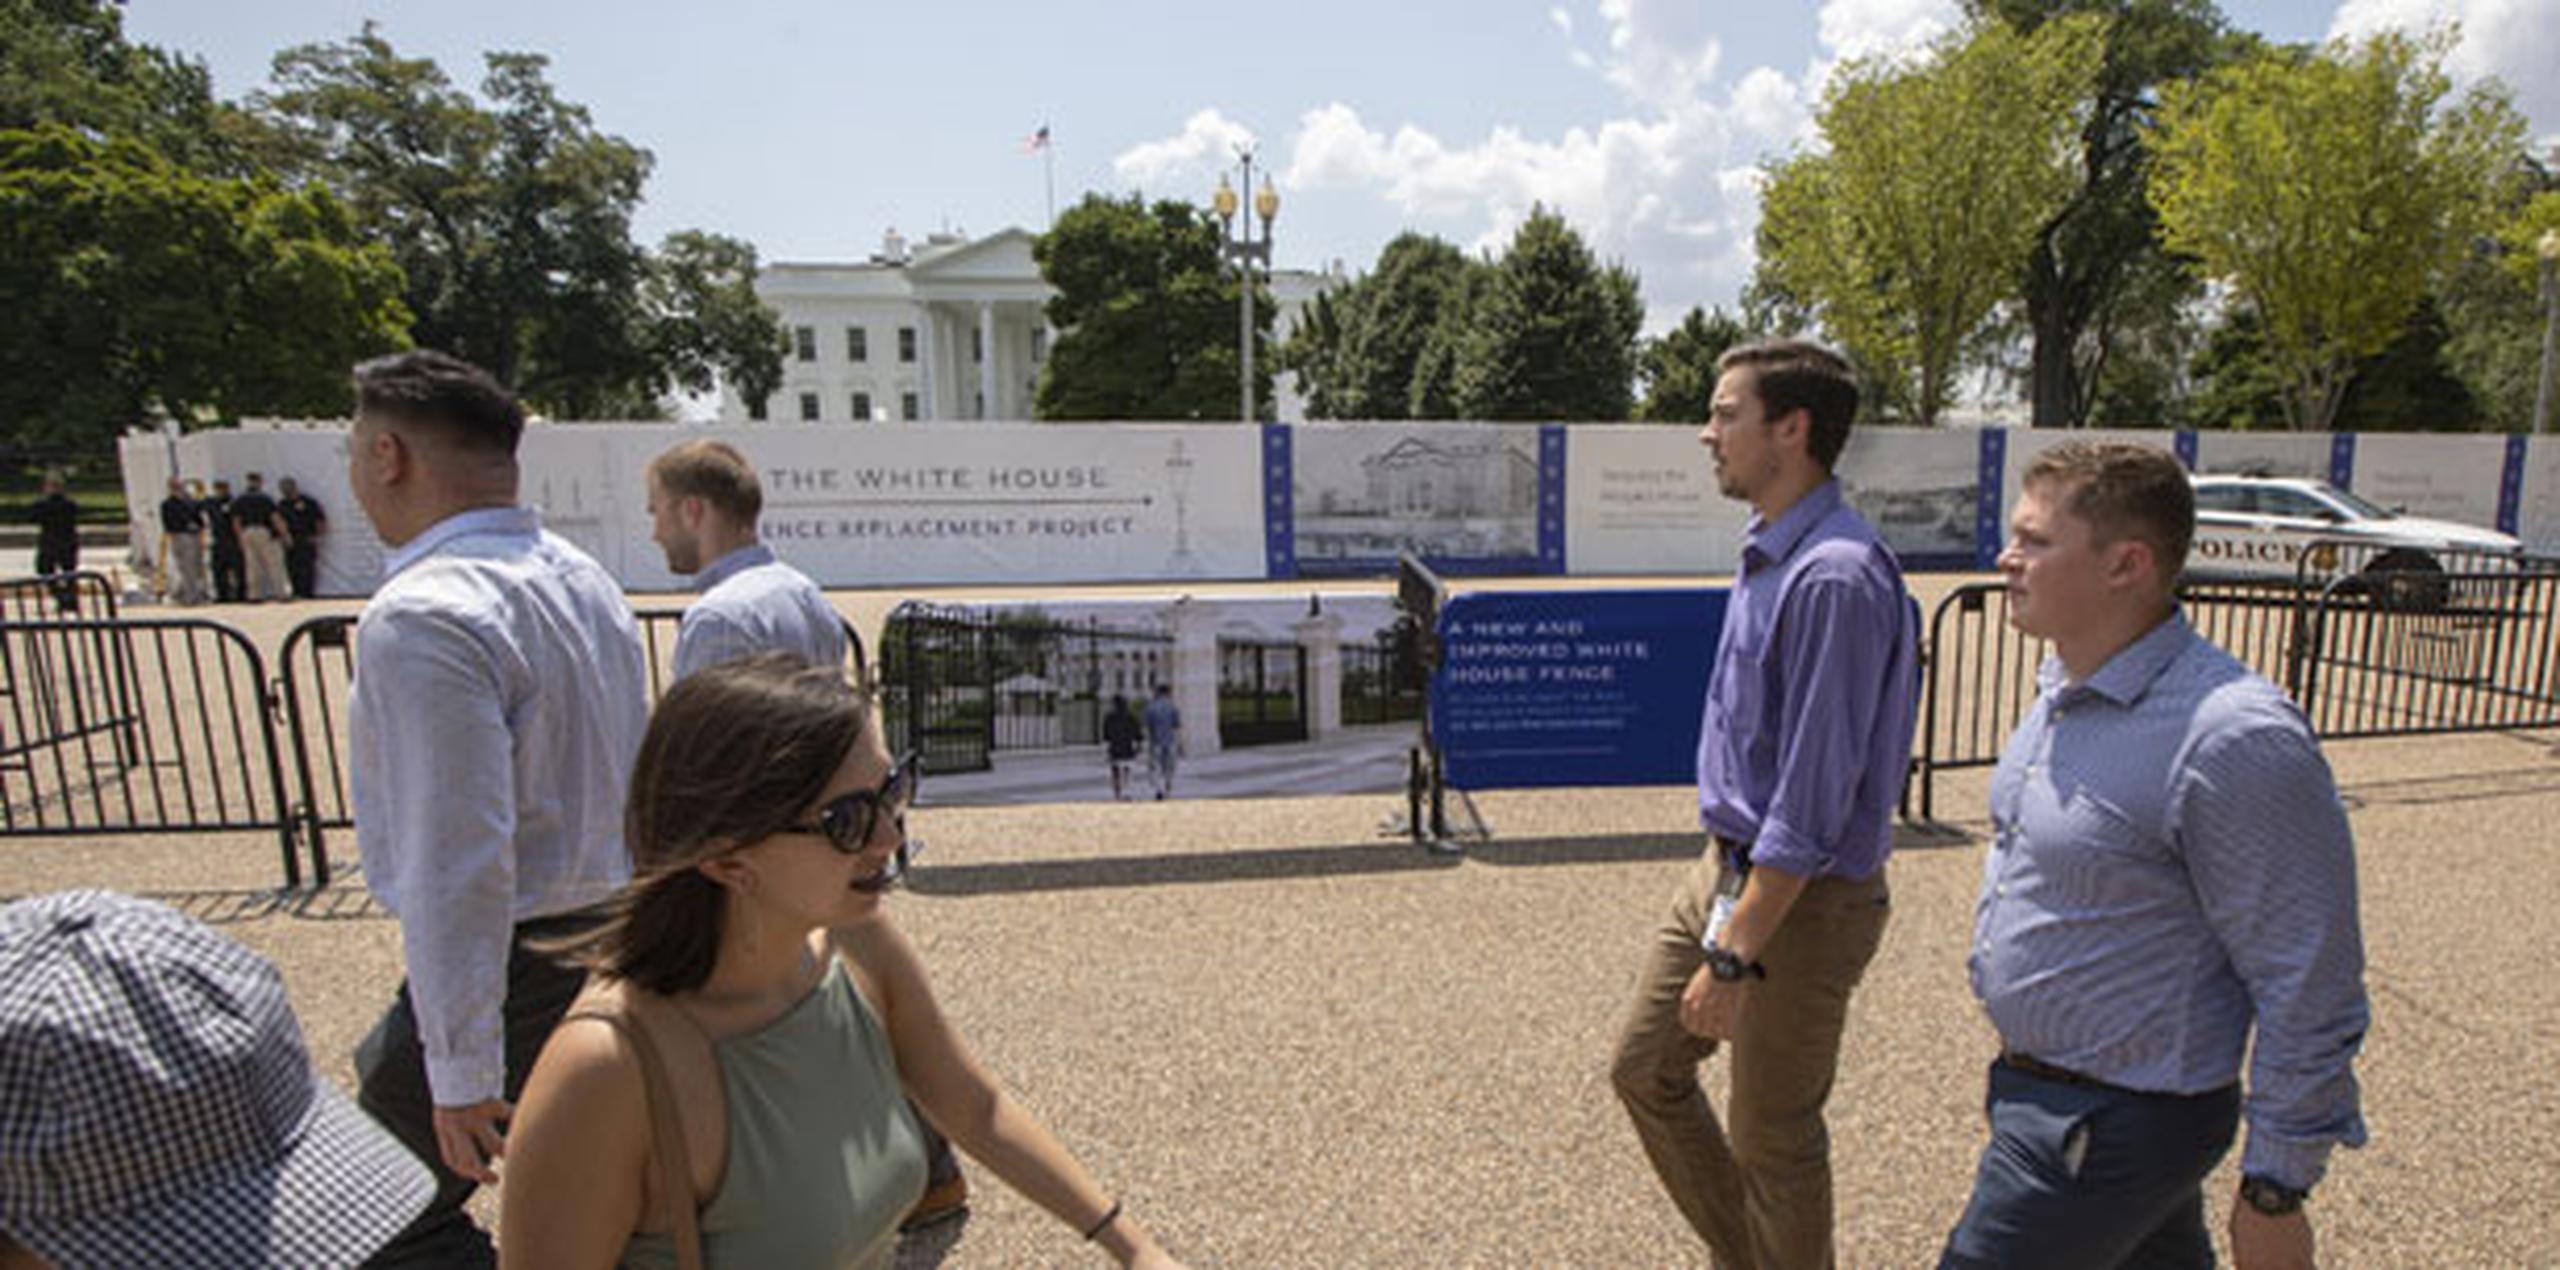 La Casa Blanca permanece visible desde todas las direcciones, y los recorridos públicos de sus salas ceremoniales continúan durante el proyecto. (AP)